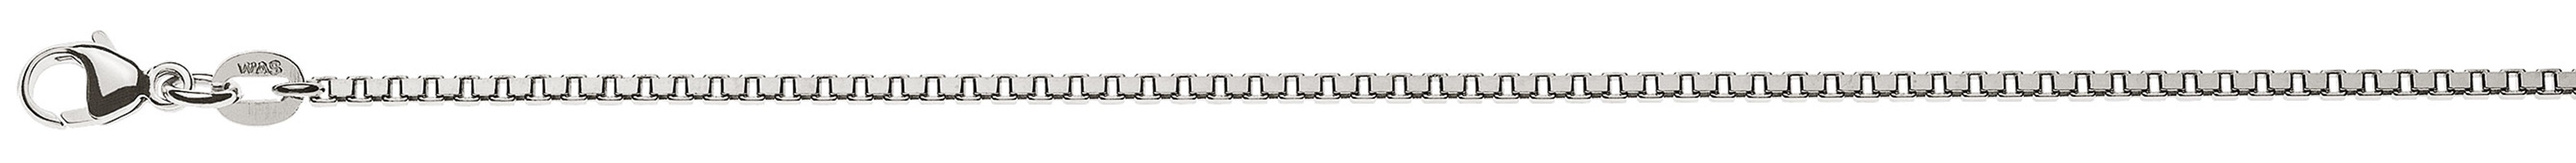 AURONOS Prestige Halskette Weissgold 18K Venezianerkette diamantiert 42cm 1.6mm